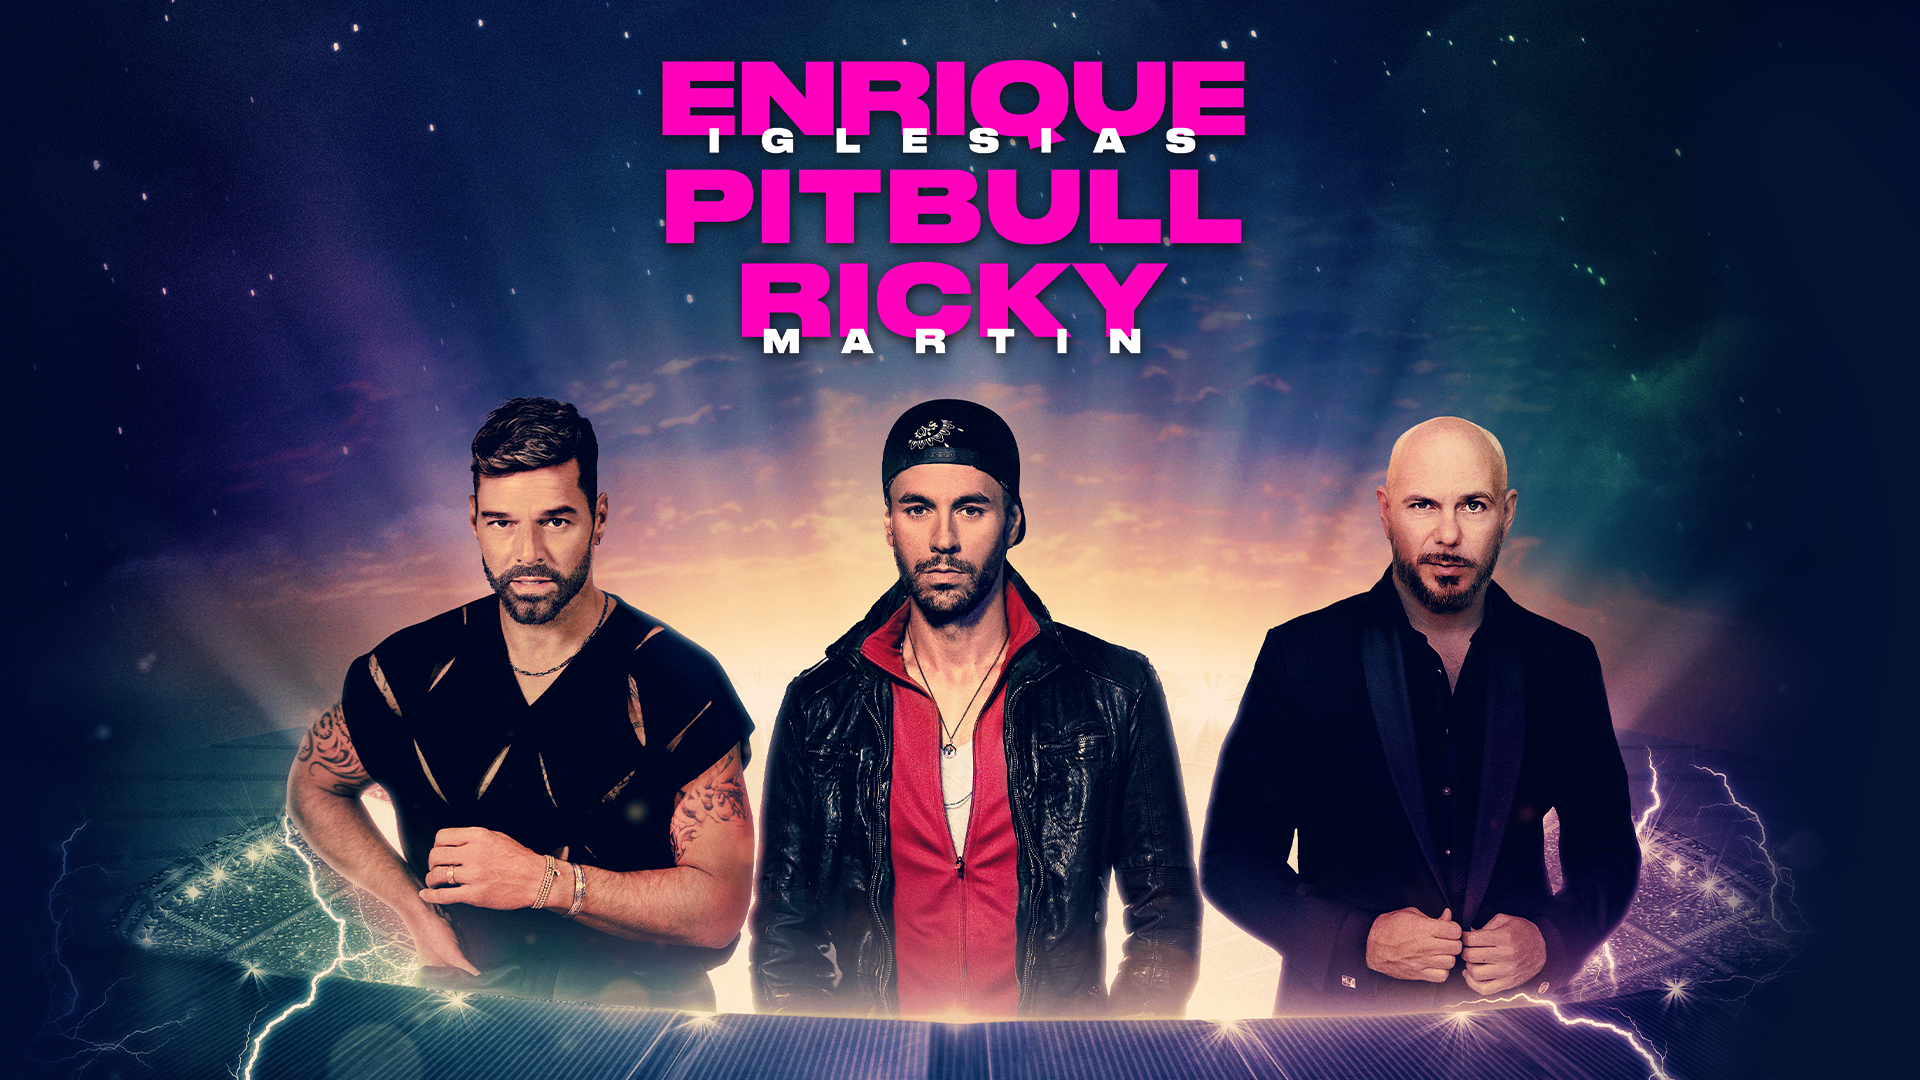 Enrique Iglesias, Pitbull, Ricky Martin - The Trilogy Tour